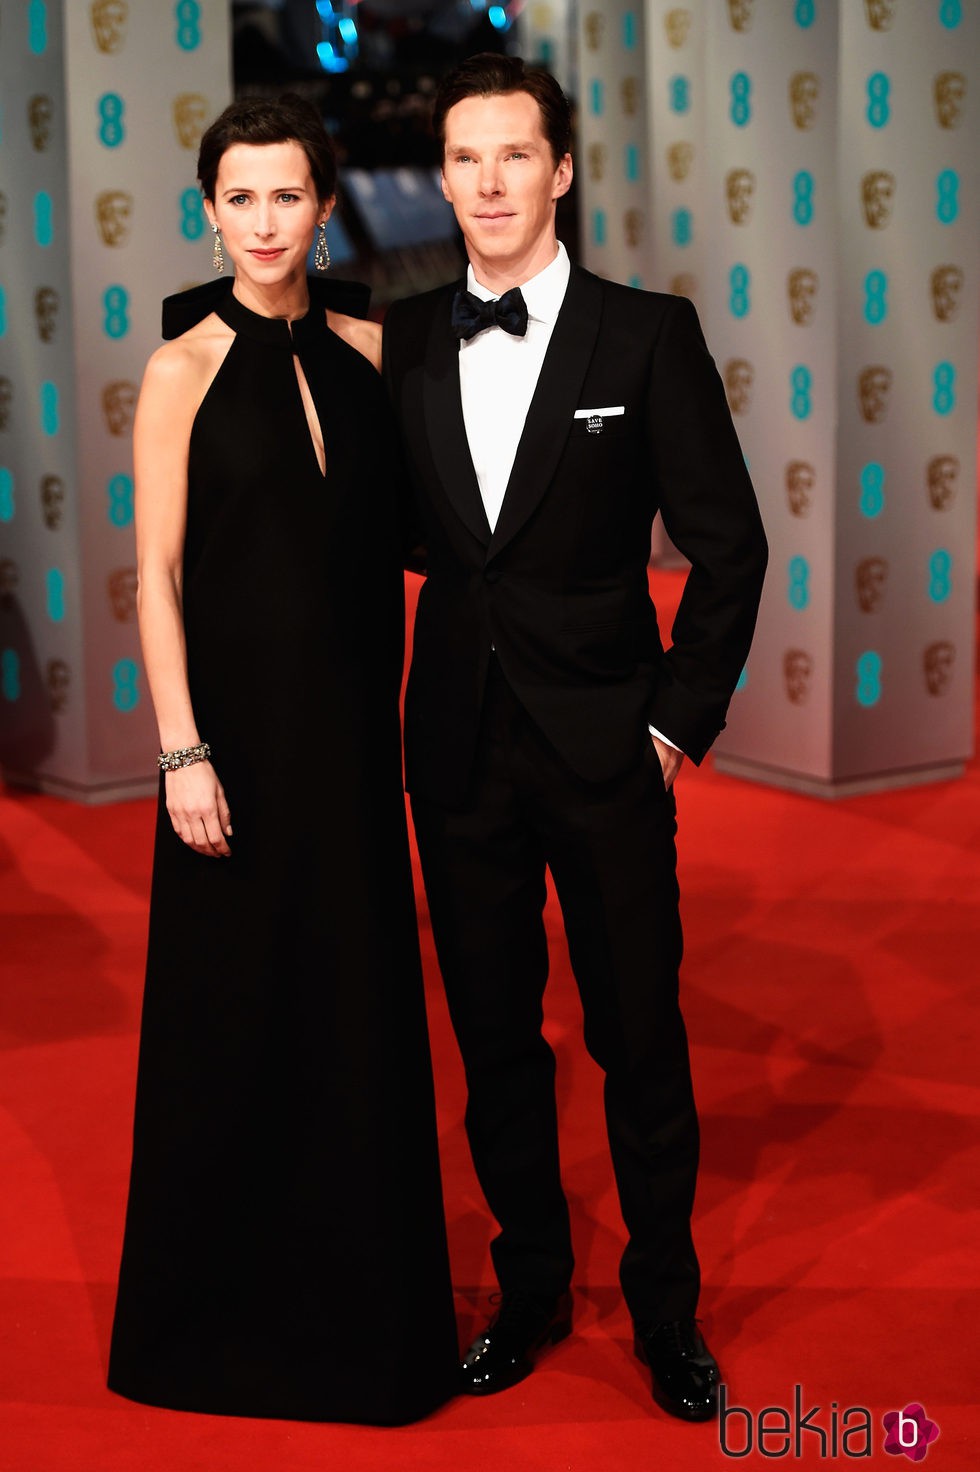 Benedict Cumberbatch y Sophie Hunter en los Premios BAFTA 2015